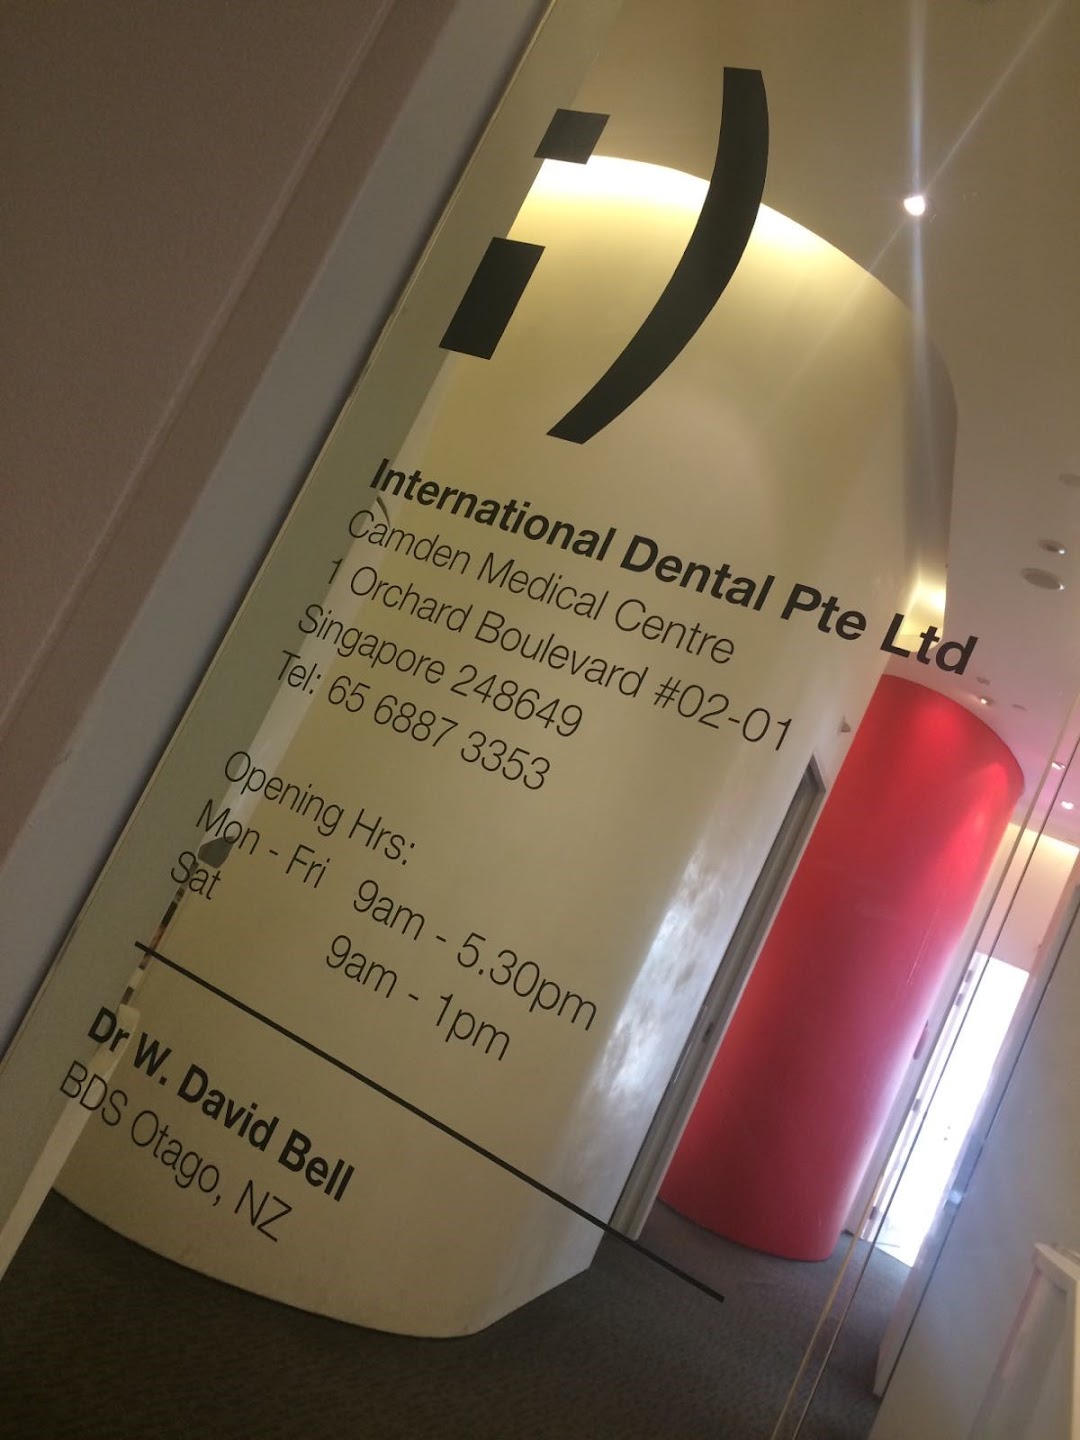 International Dental at Camden